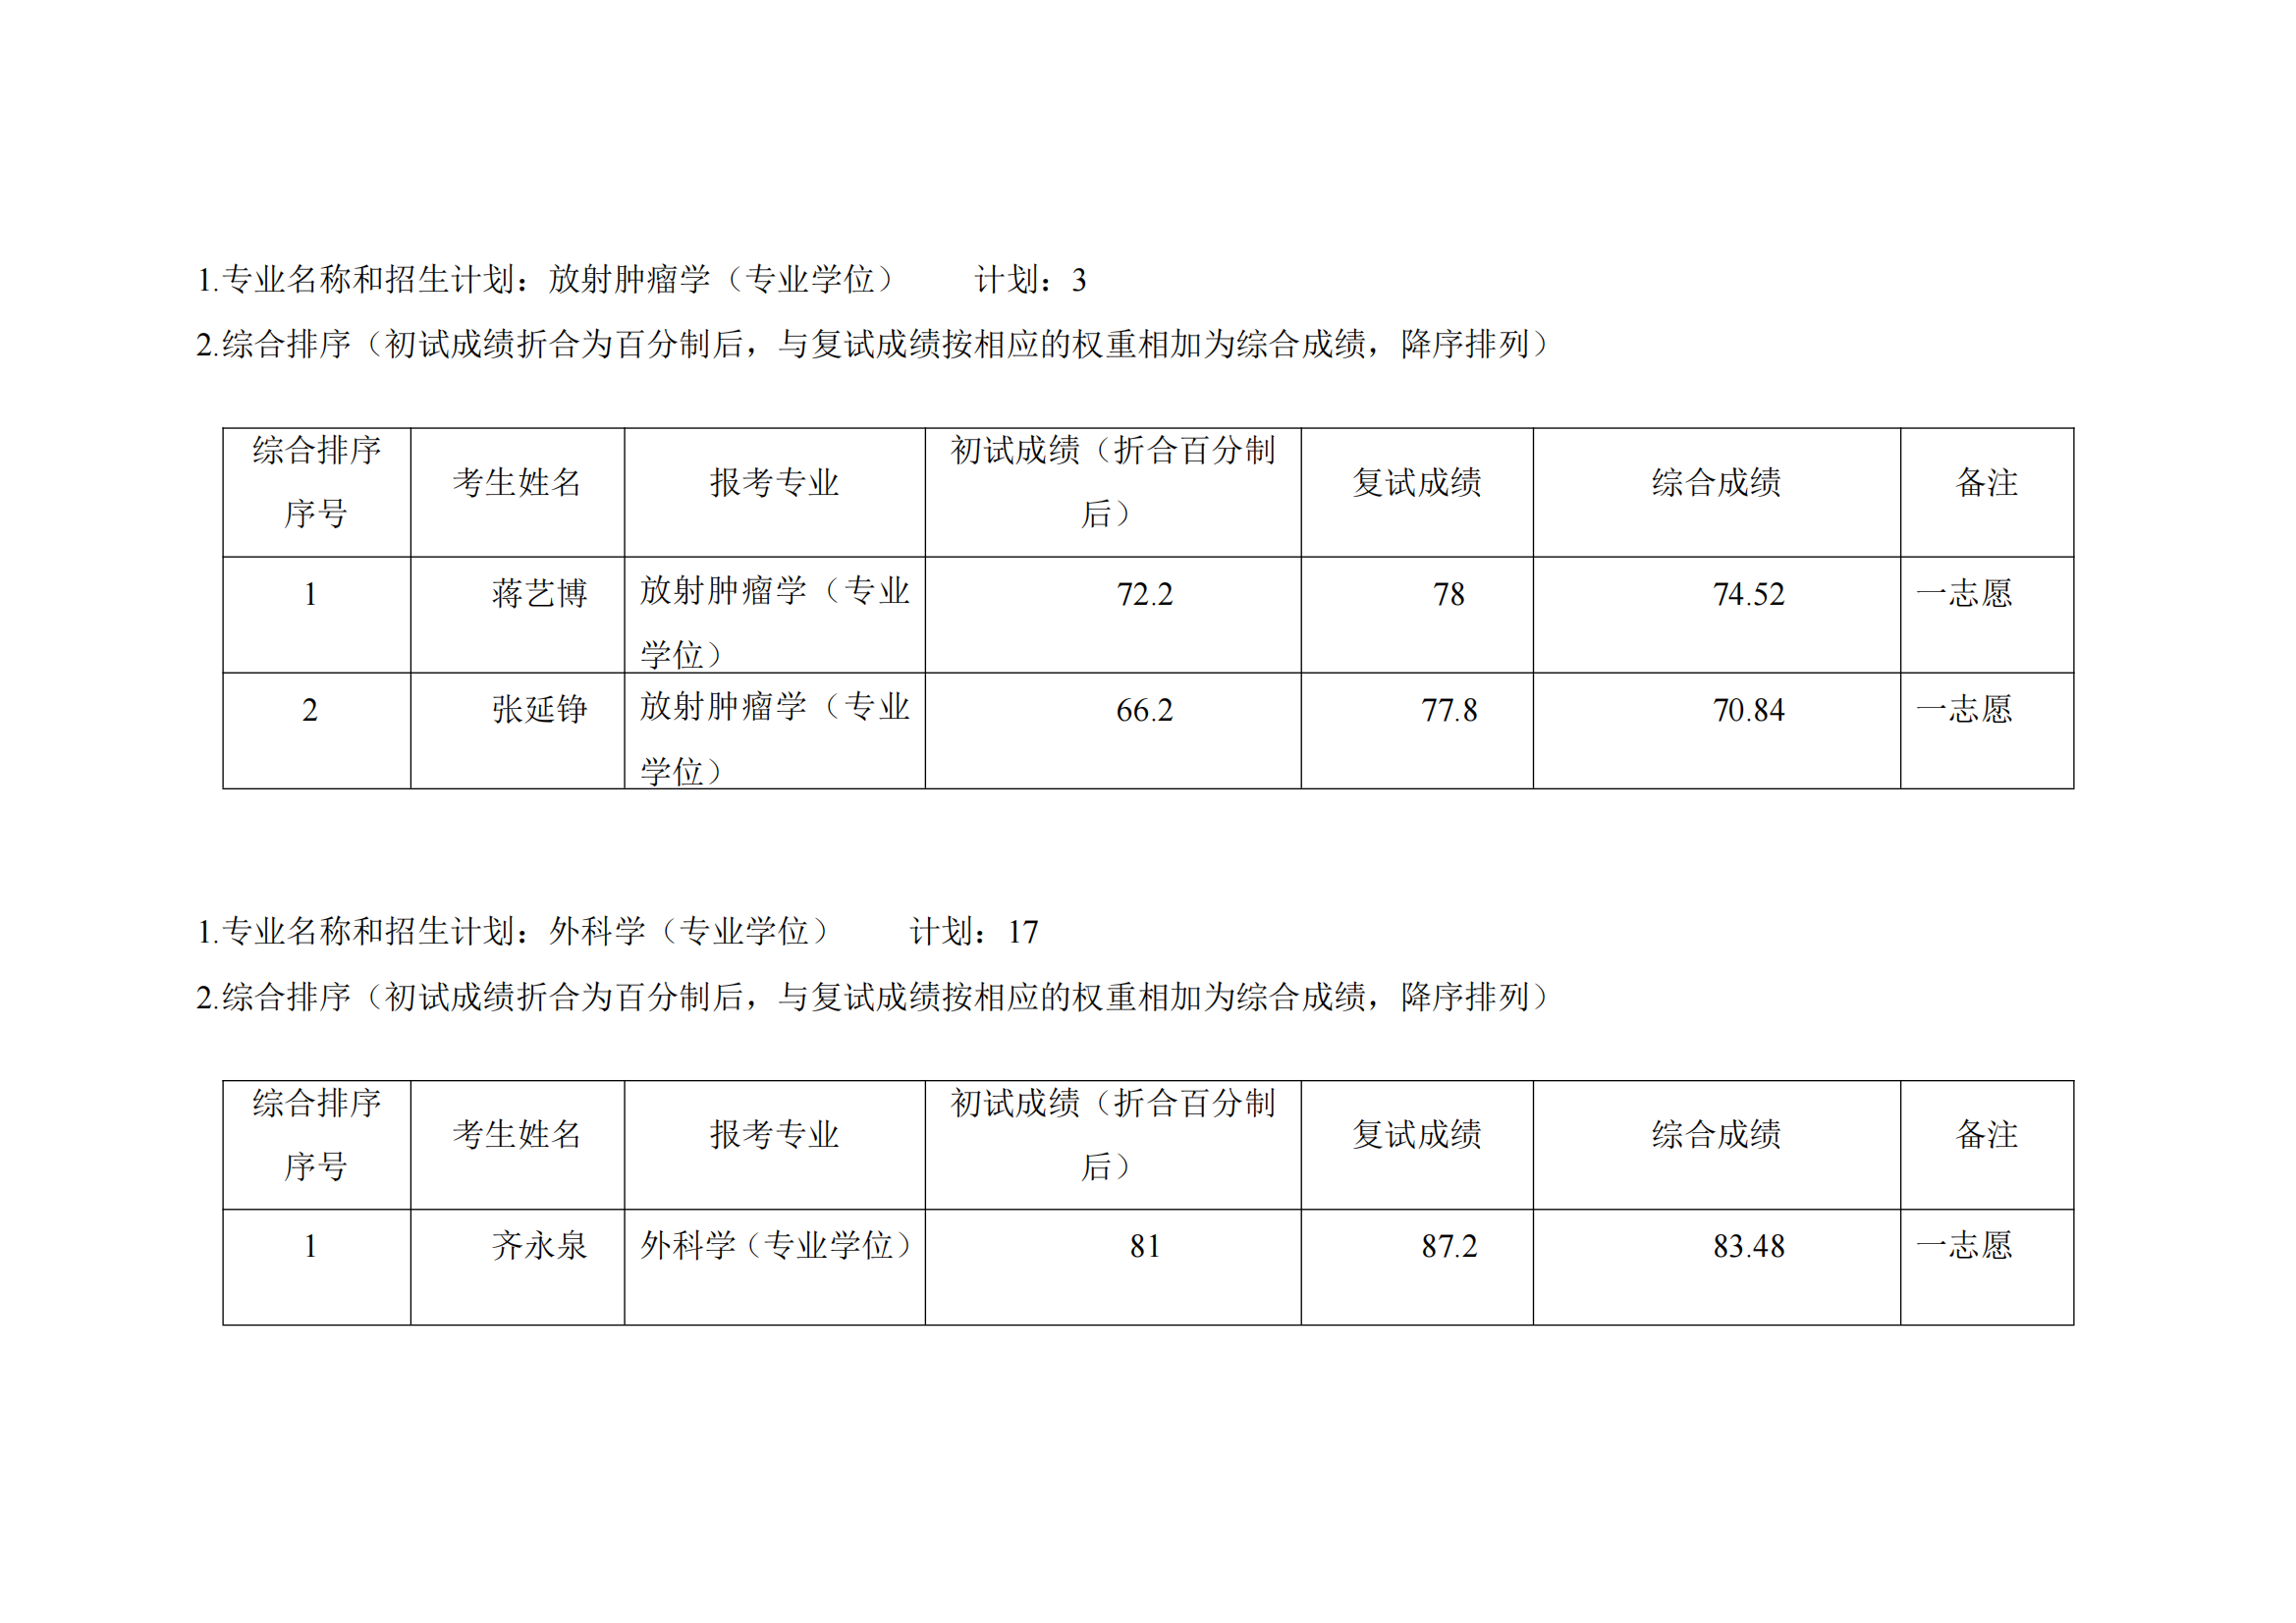 郑州大学第五附属医院 2023 年硕士研究生复试结果综合排序公示表（1）_02.png